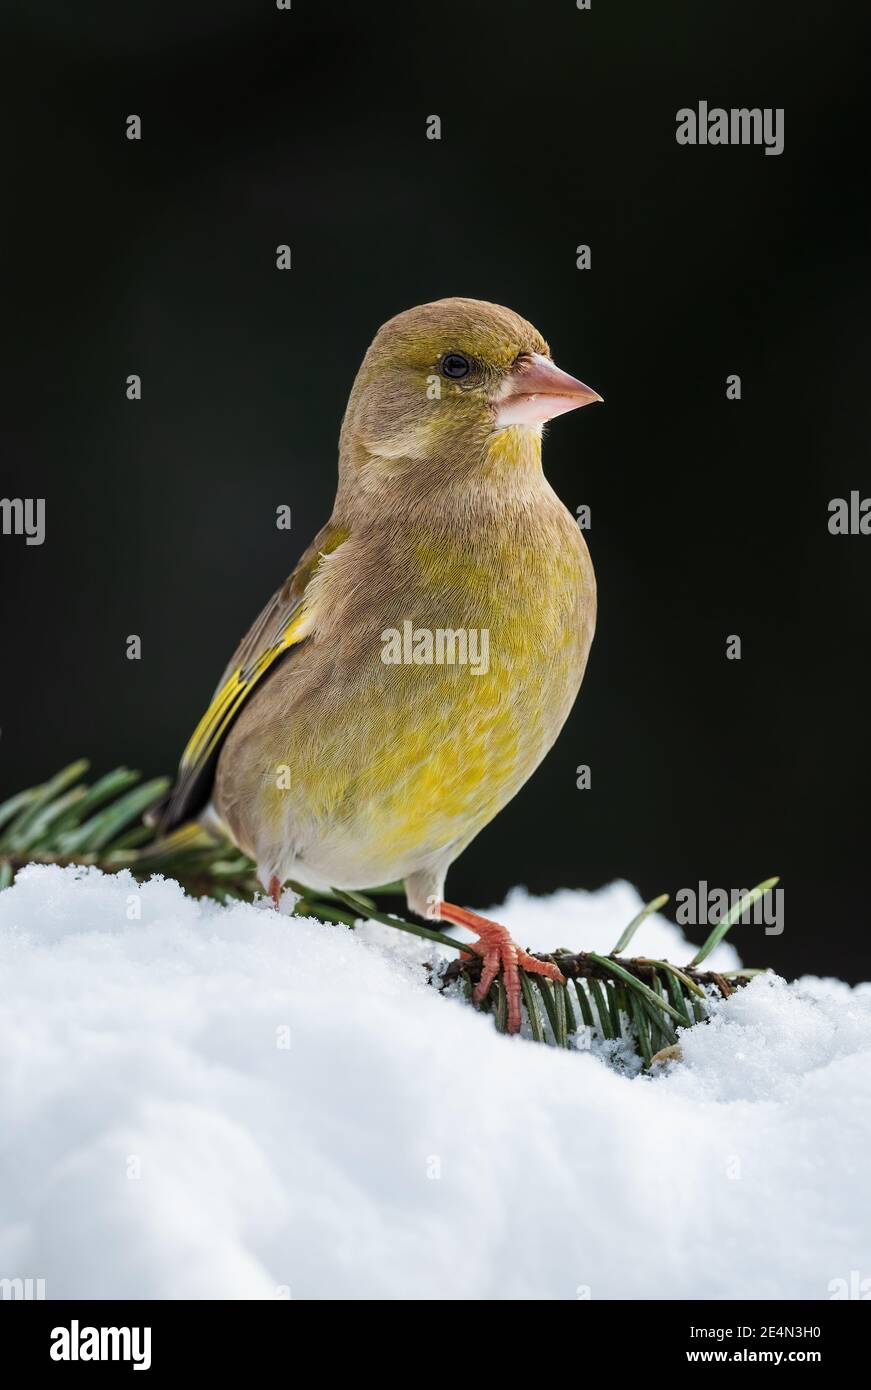 Europäischer Grünfink - Chloris chloris, schöner Singvogel aus europäischen Gärten und Wäldern, Zlin, Tschechische Republik. Stockfoto